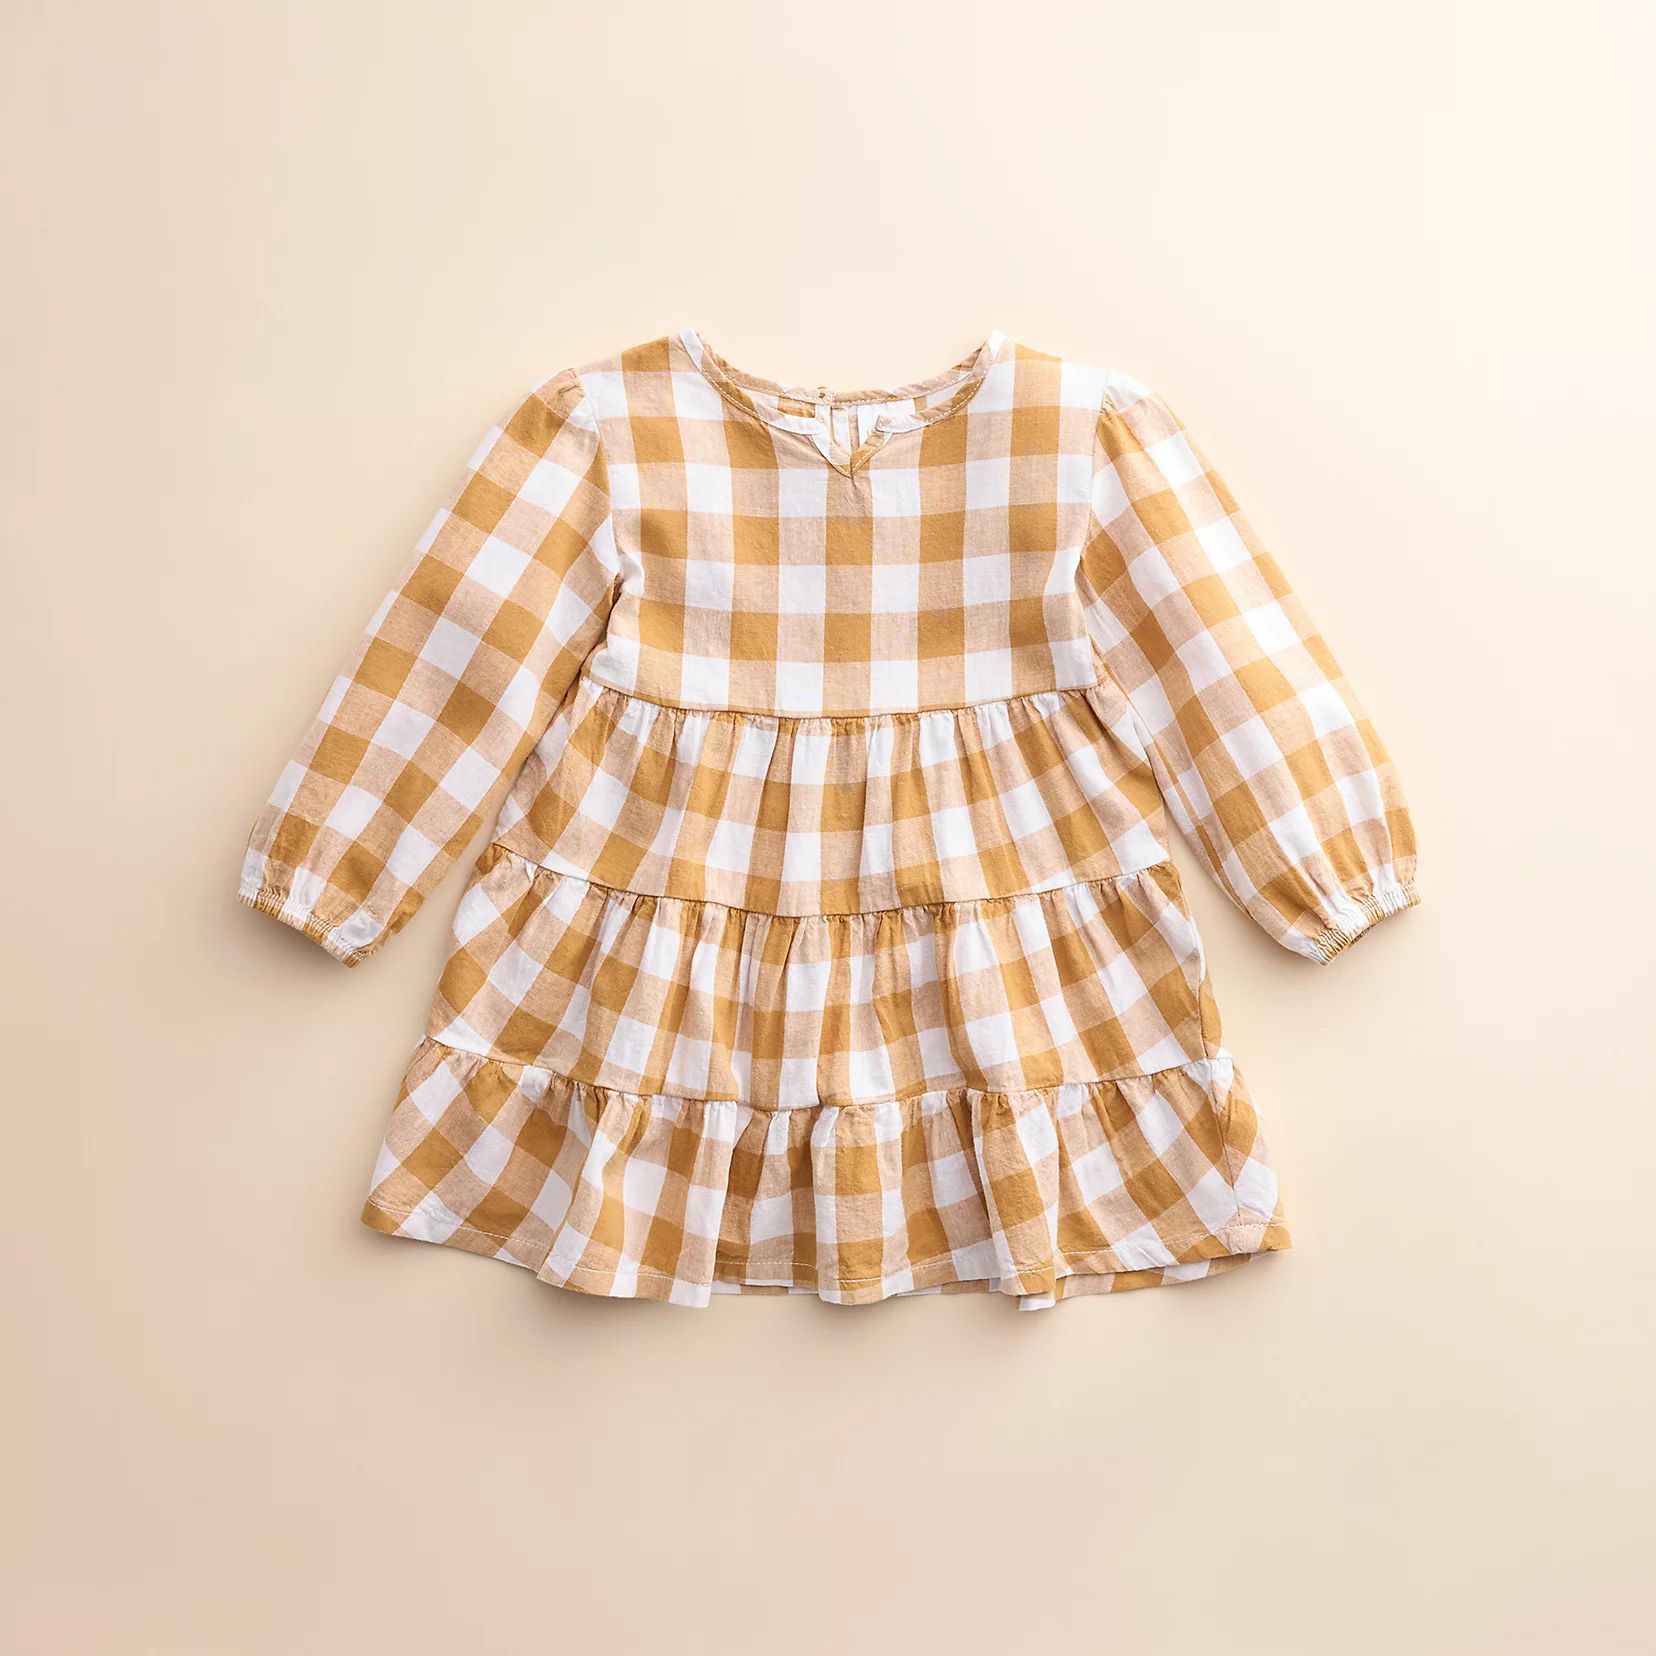 Girls 4-8 Little Co. by Lauren Conrad Peasant Dress | Kohls | Kohl's